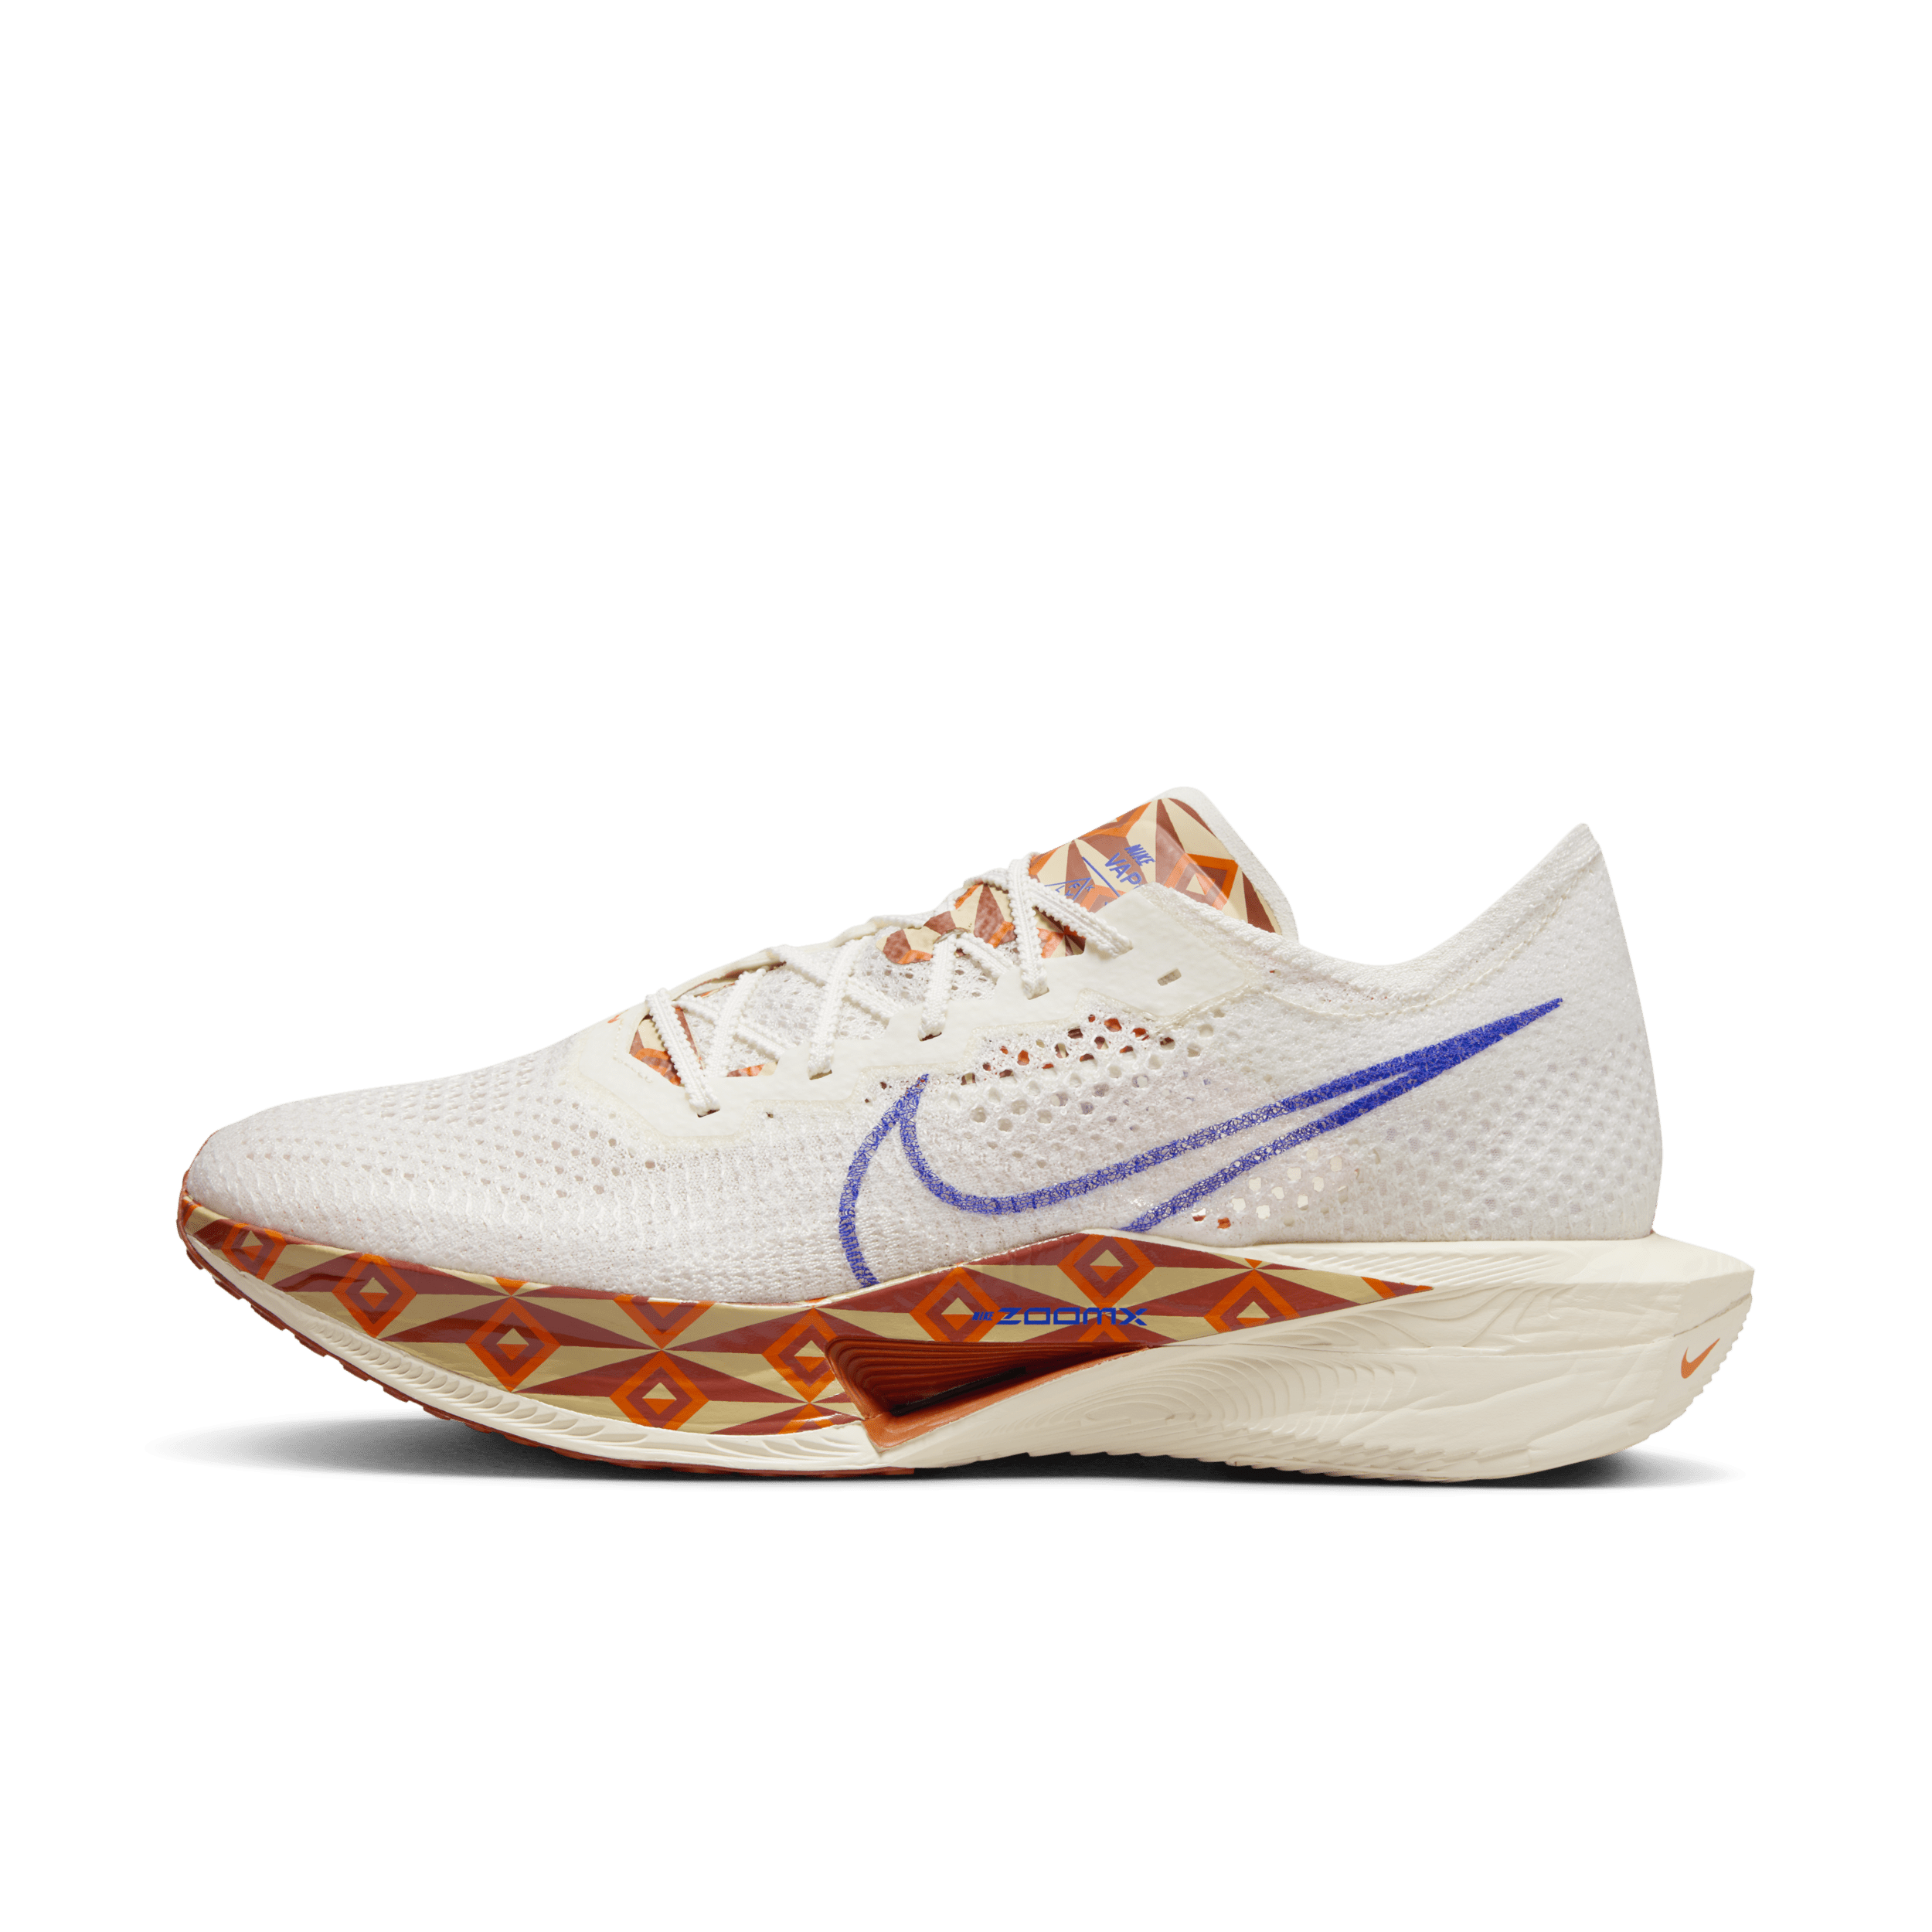 Nike Vaporfly 3 Premium Zapatillas de competición para asfalto - Hombre - Blanco